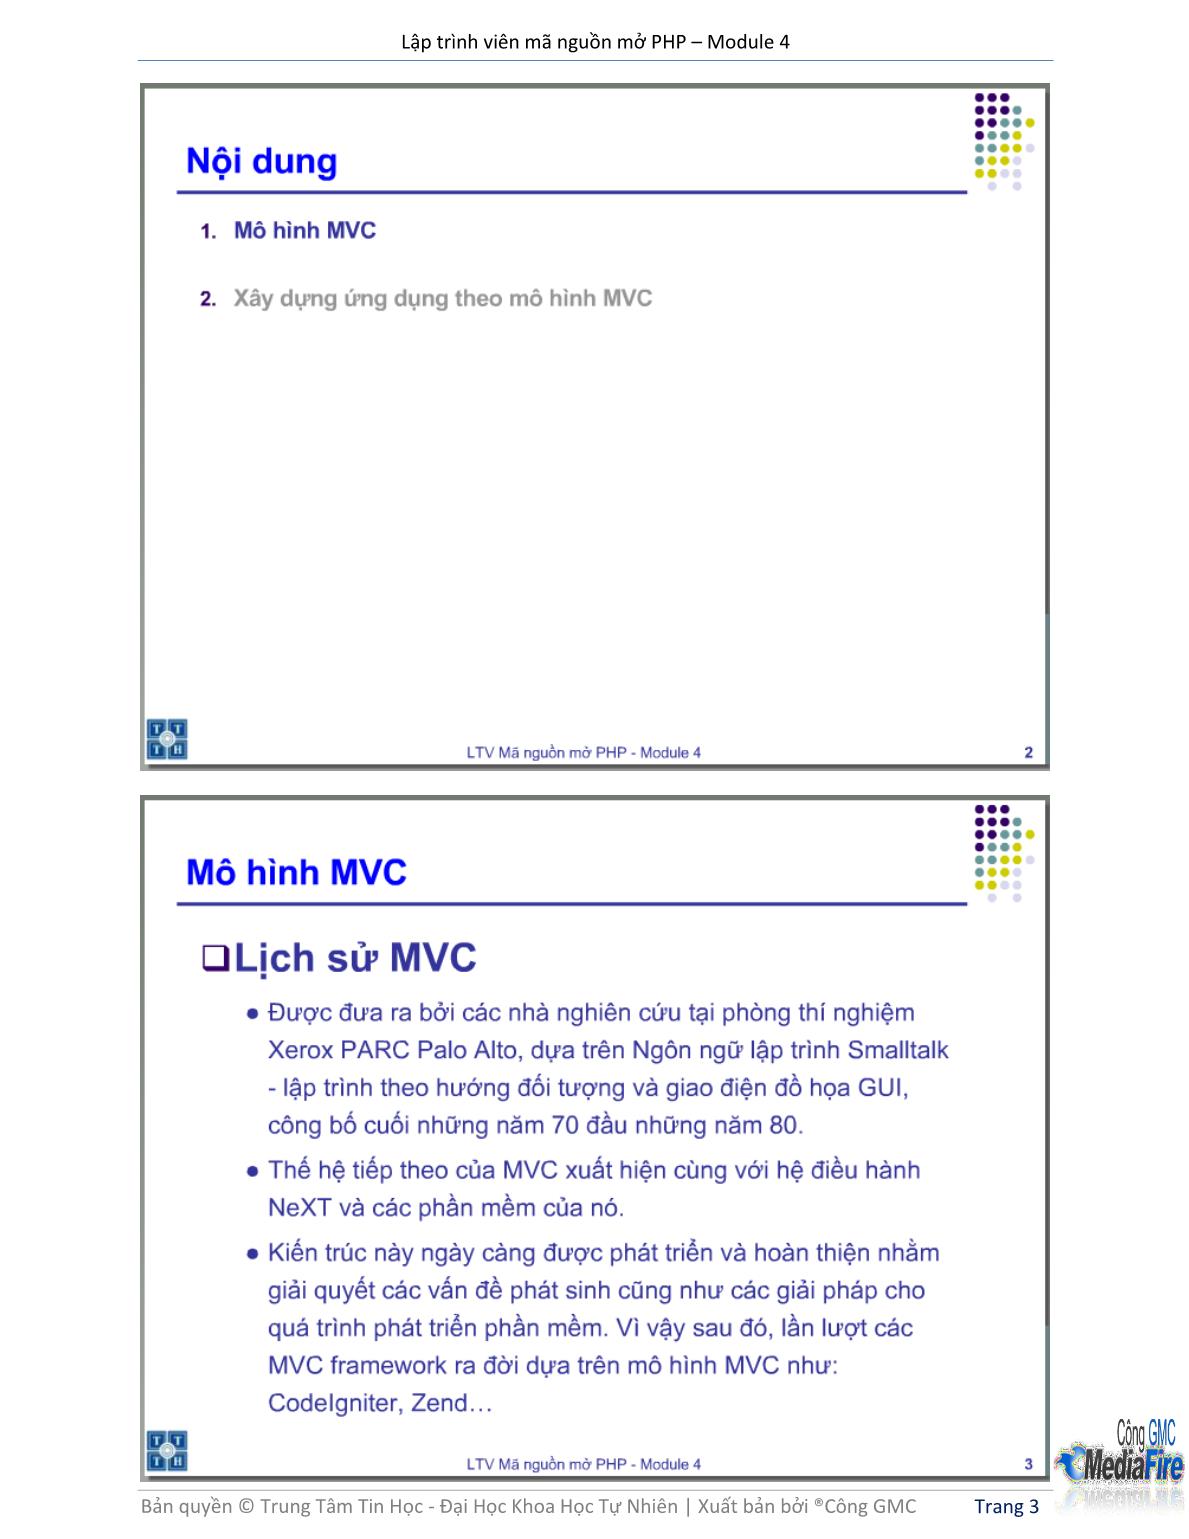 Bài giảng Lập trình viên mã nguồn mở PHP - Module 4, Bài 1: Mô hình MVC - Trường Đại học Khoa học tự nhiên - Đại học Quốc gia TP Hồ Chí Minh trang 3